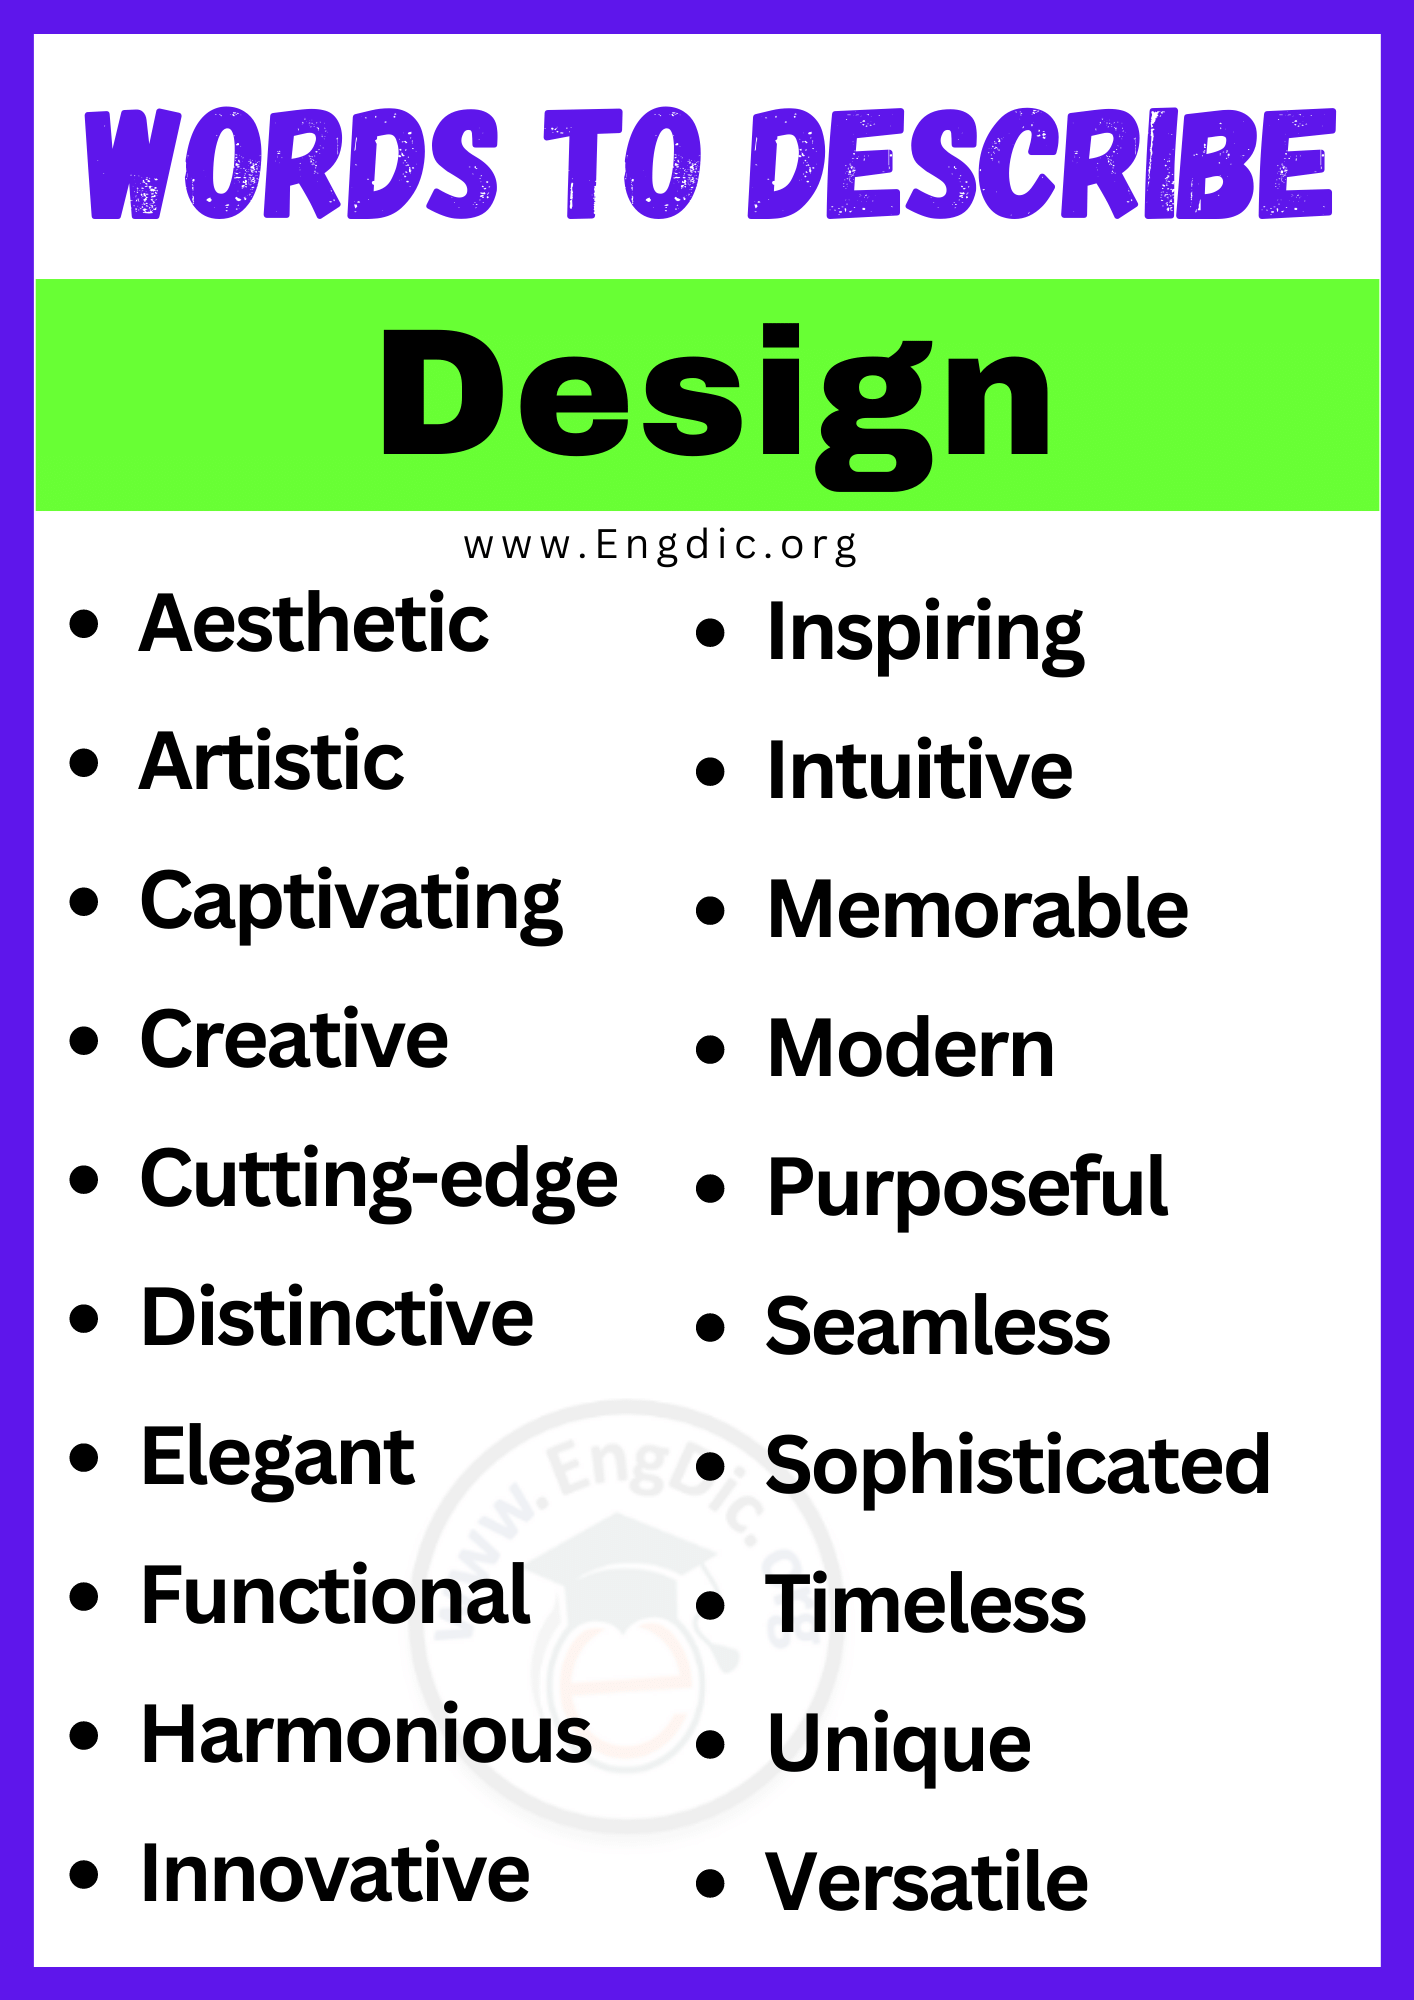 Words to Describe Design